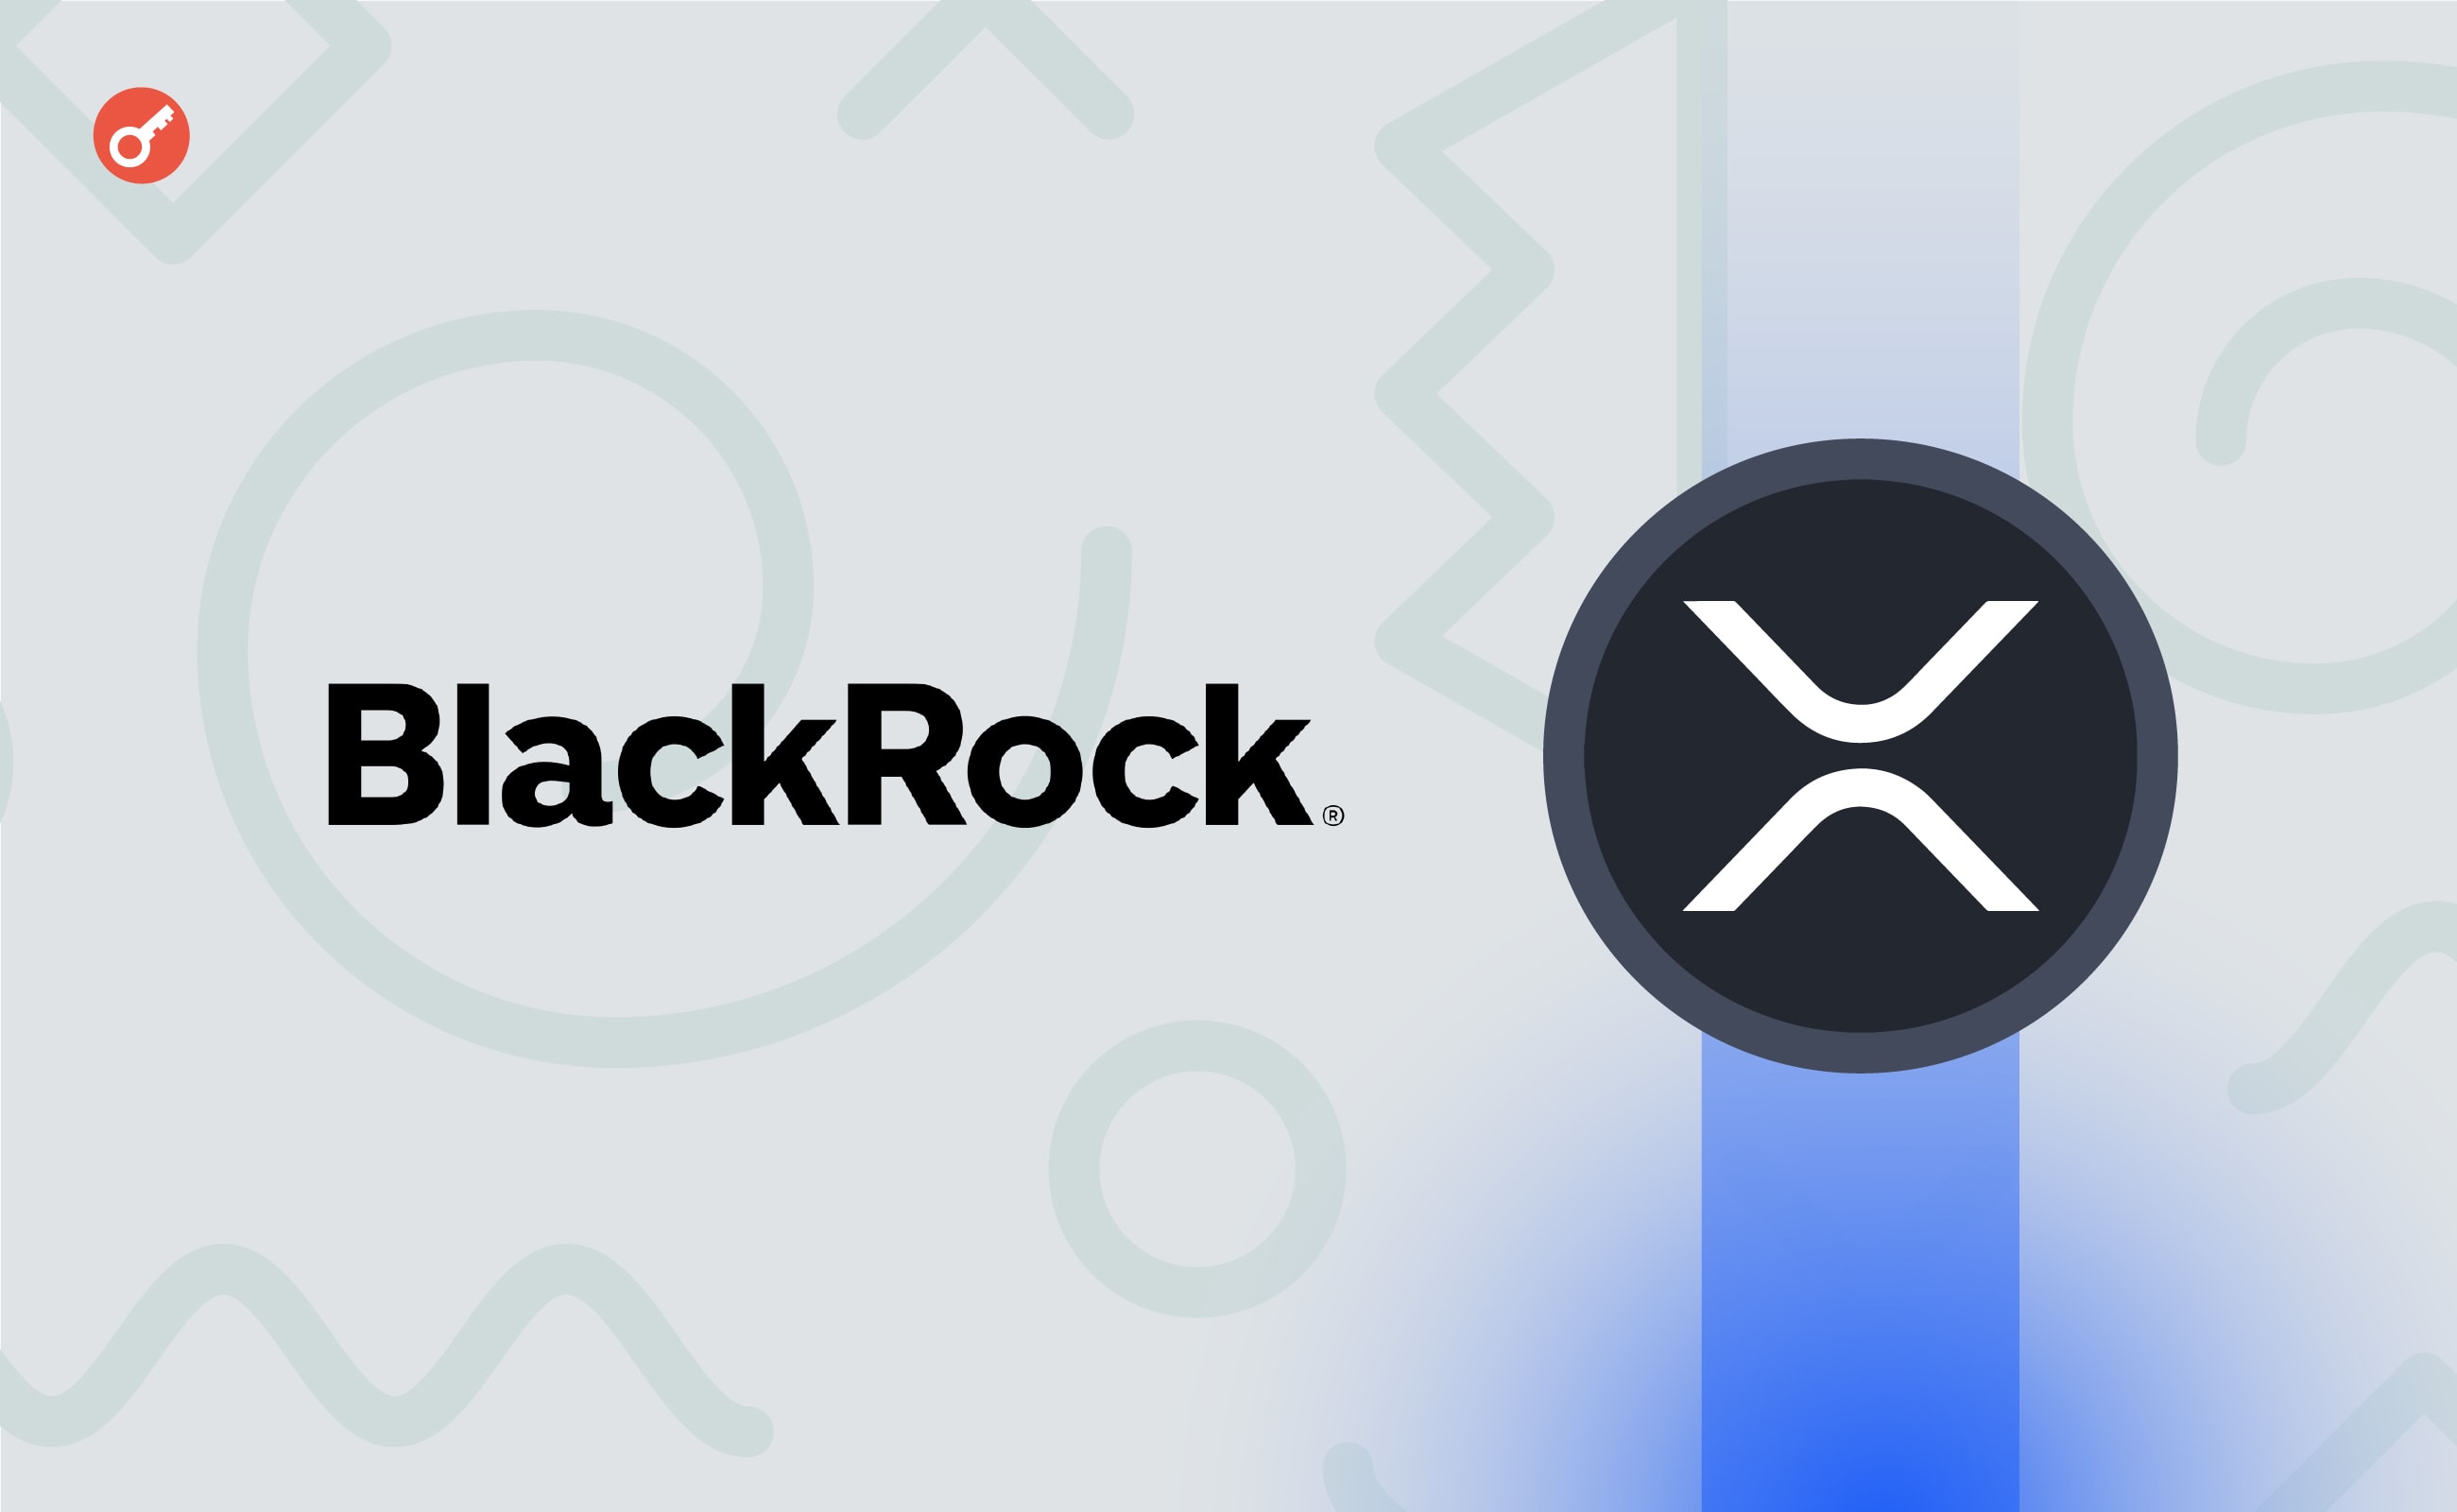 У BlackRock спростували інформацію про запуск спотового XRP-ETF. Головний колаж новини.